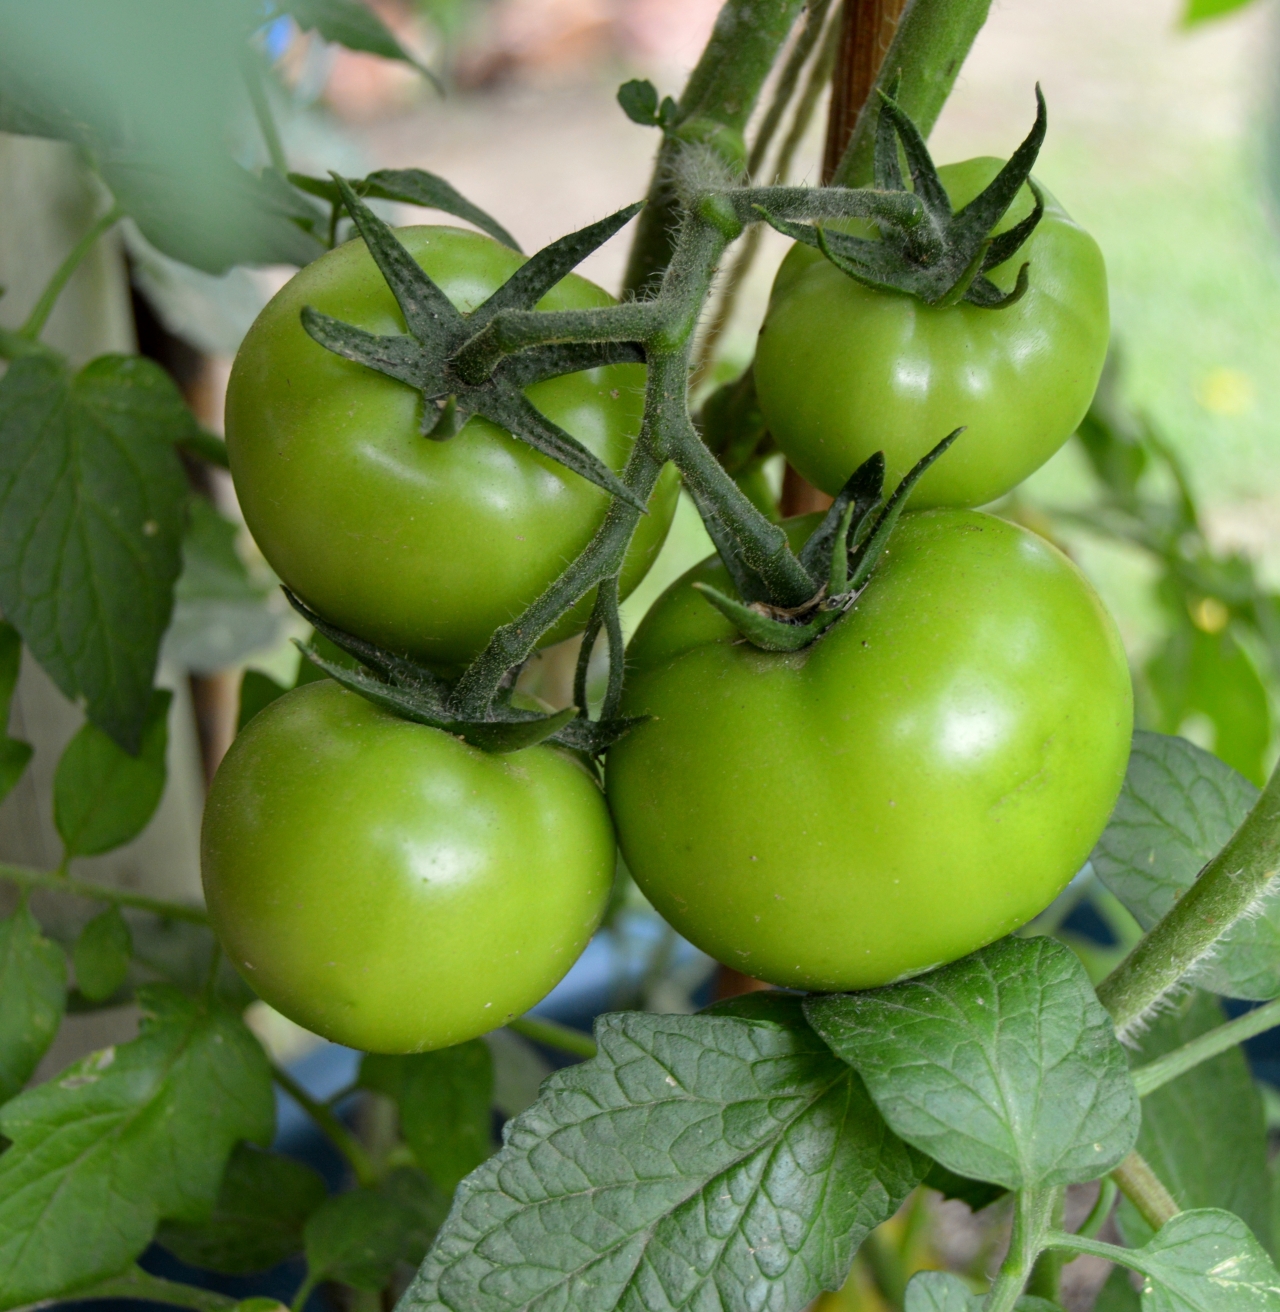 村庄小屋后院种植番茄青色果实植物高清图片下载